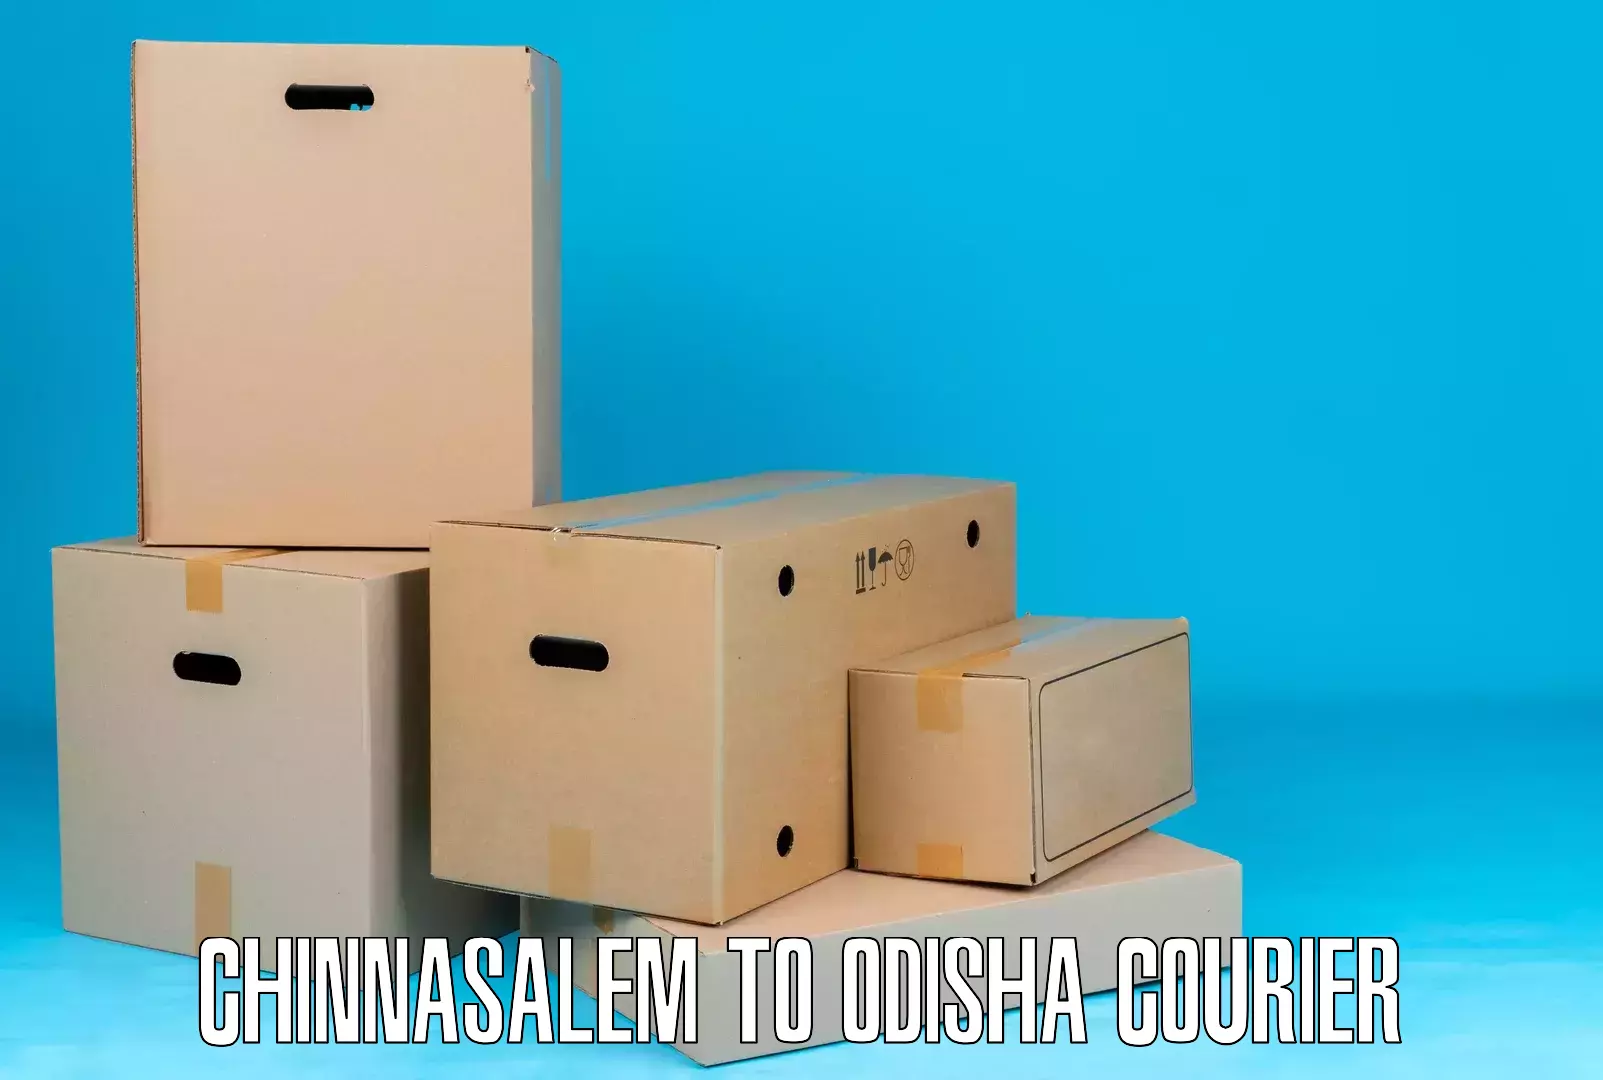 Efficient parcel service Chinnasalem to Daspalla